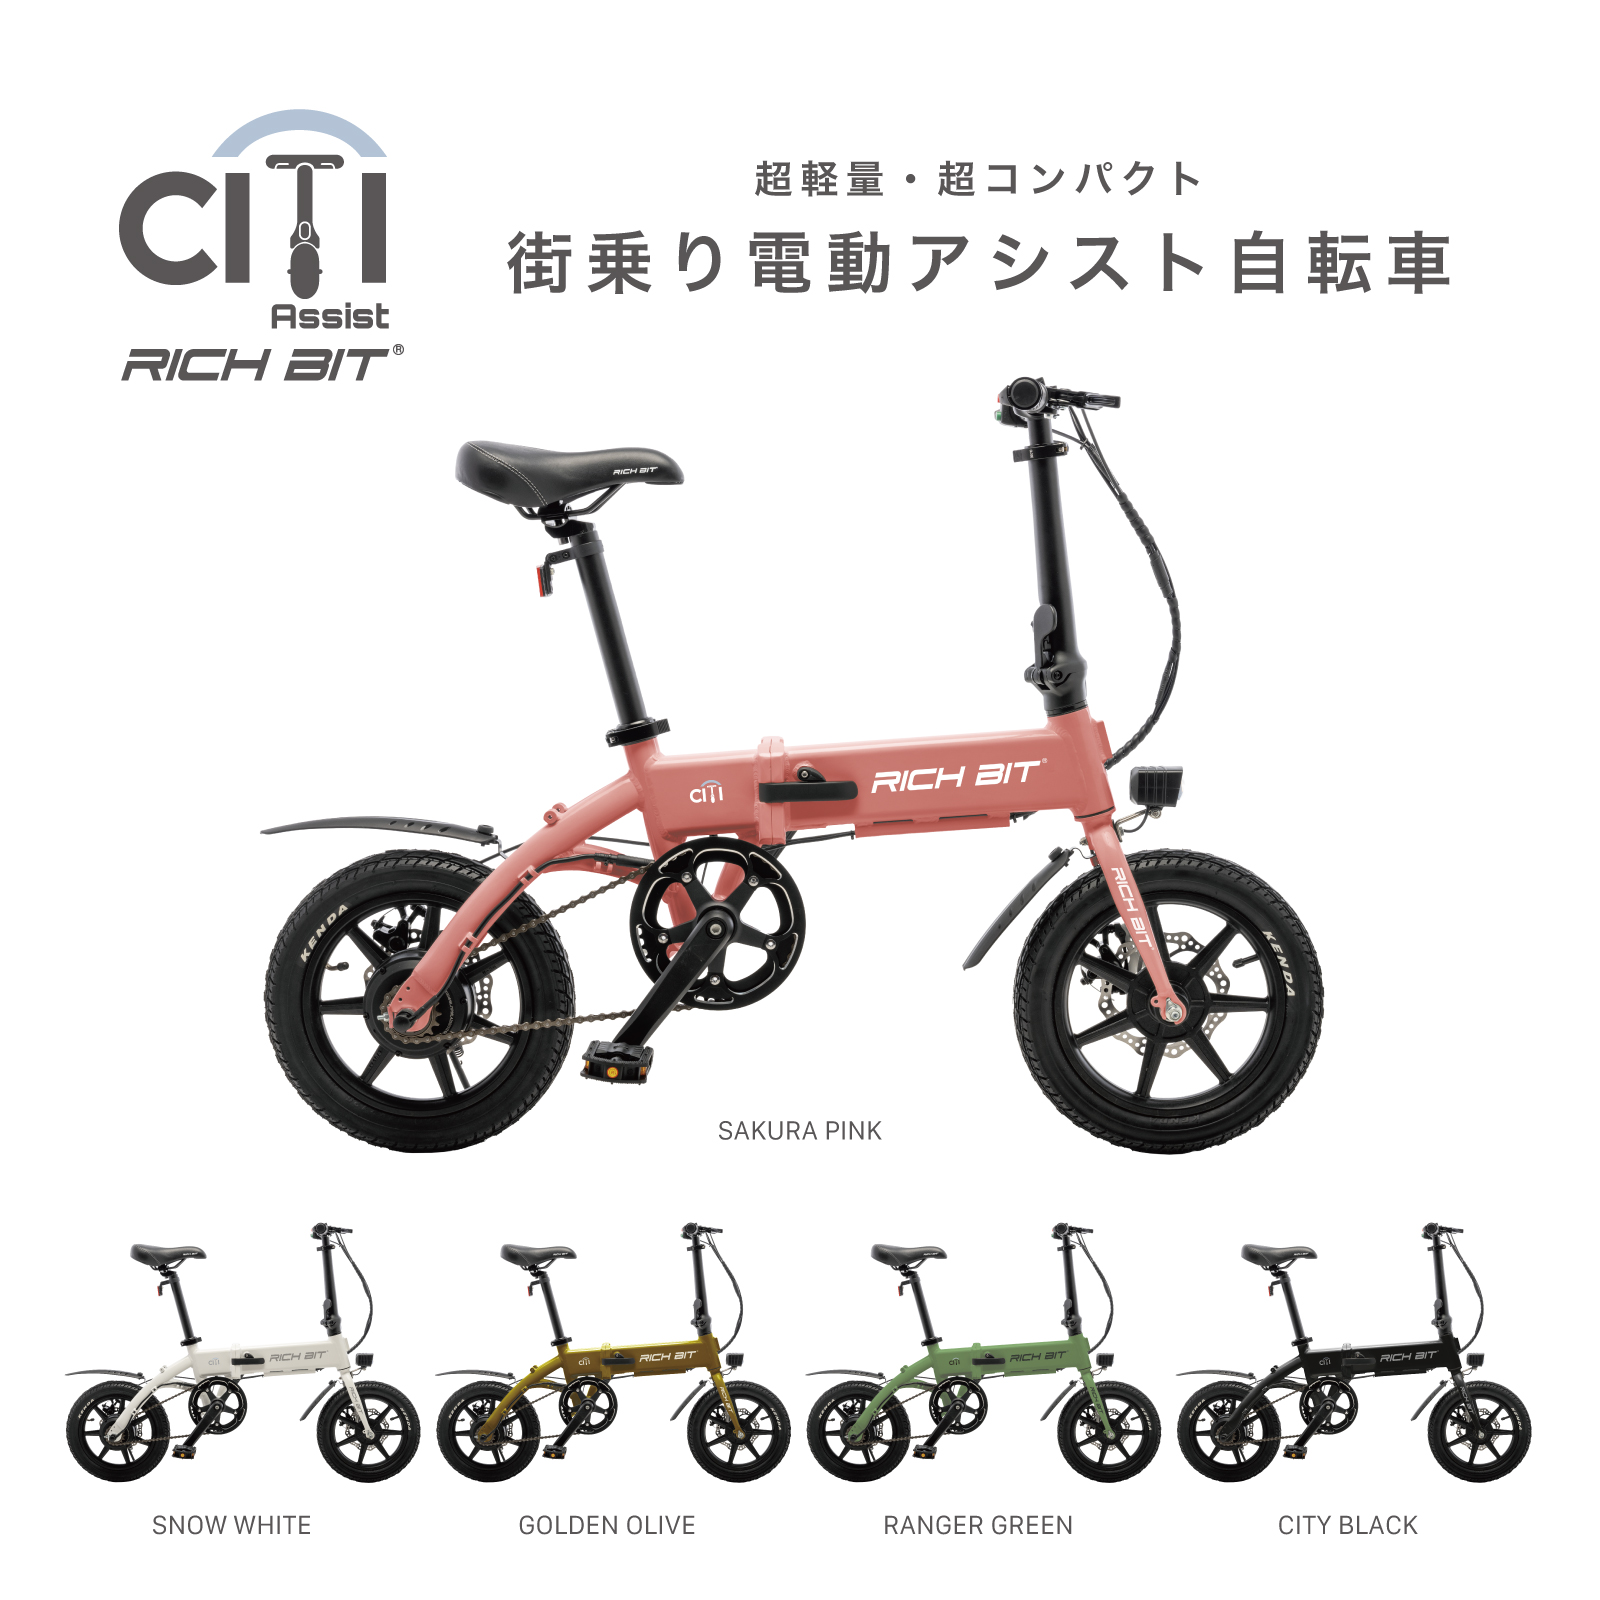 特定小型原付モデル&電動アシスト自転車モデル RICHBIT CITY 